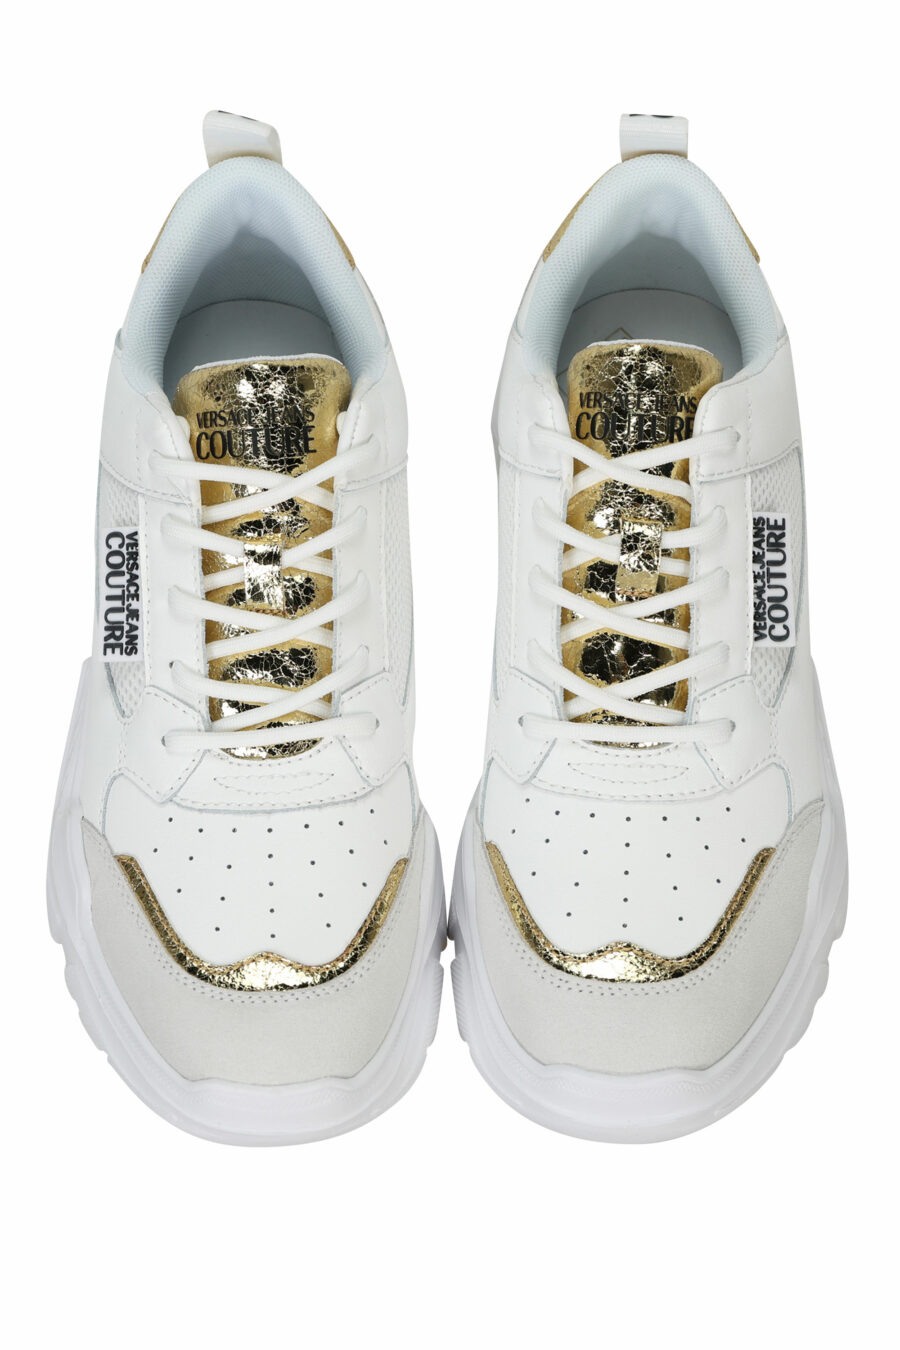 Zapatillas blancas mix con detalles dorados y plataforma - 8052019604764 4